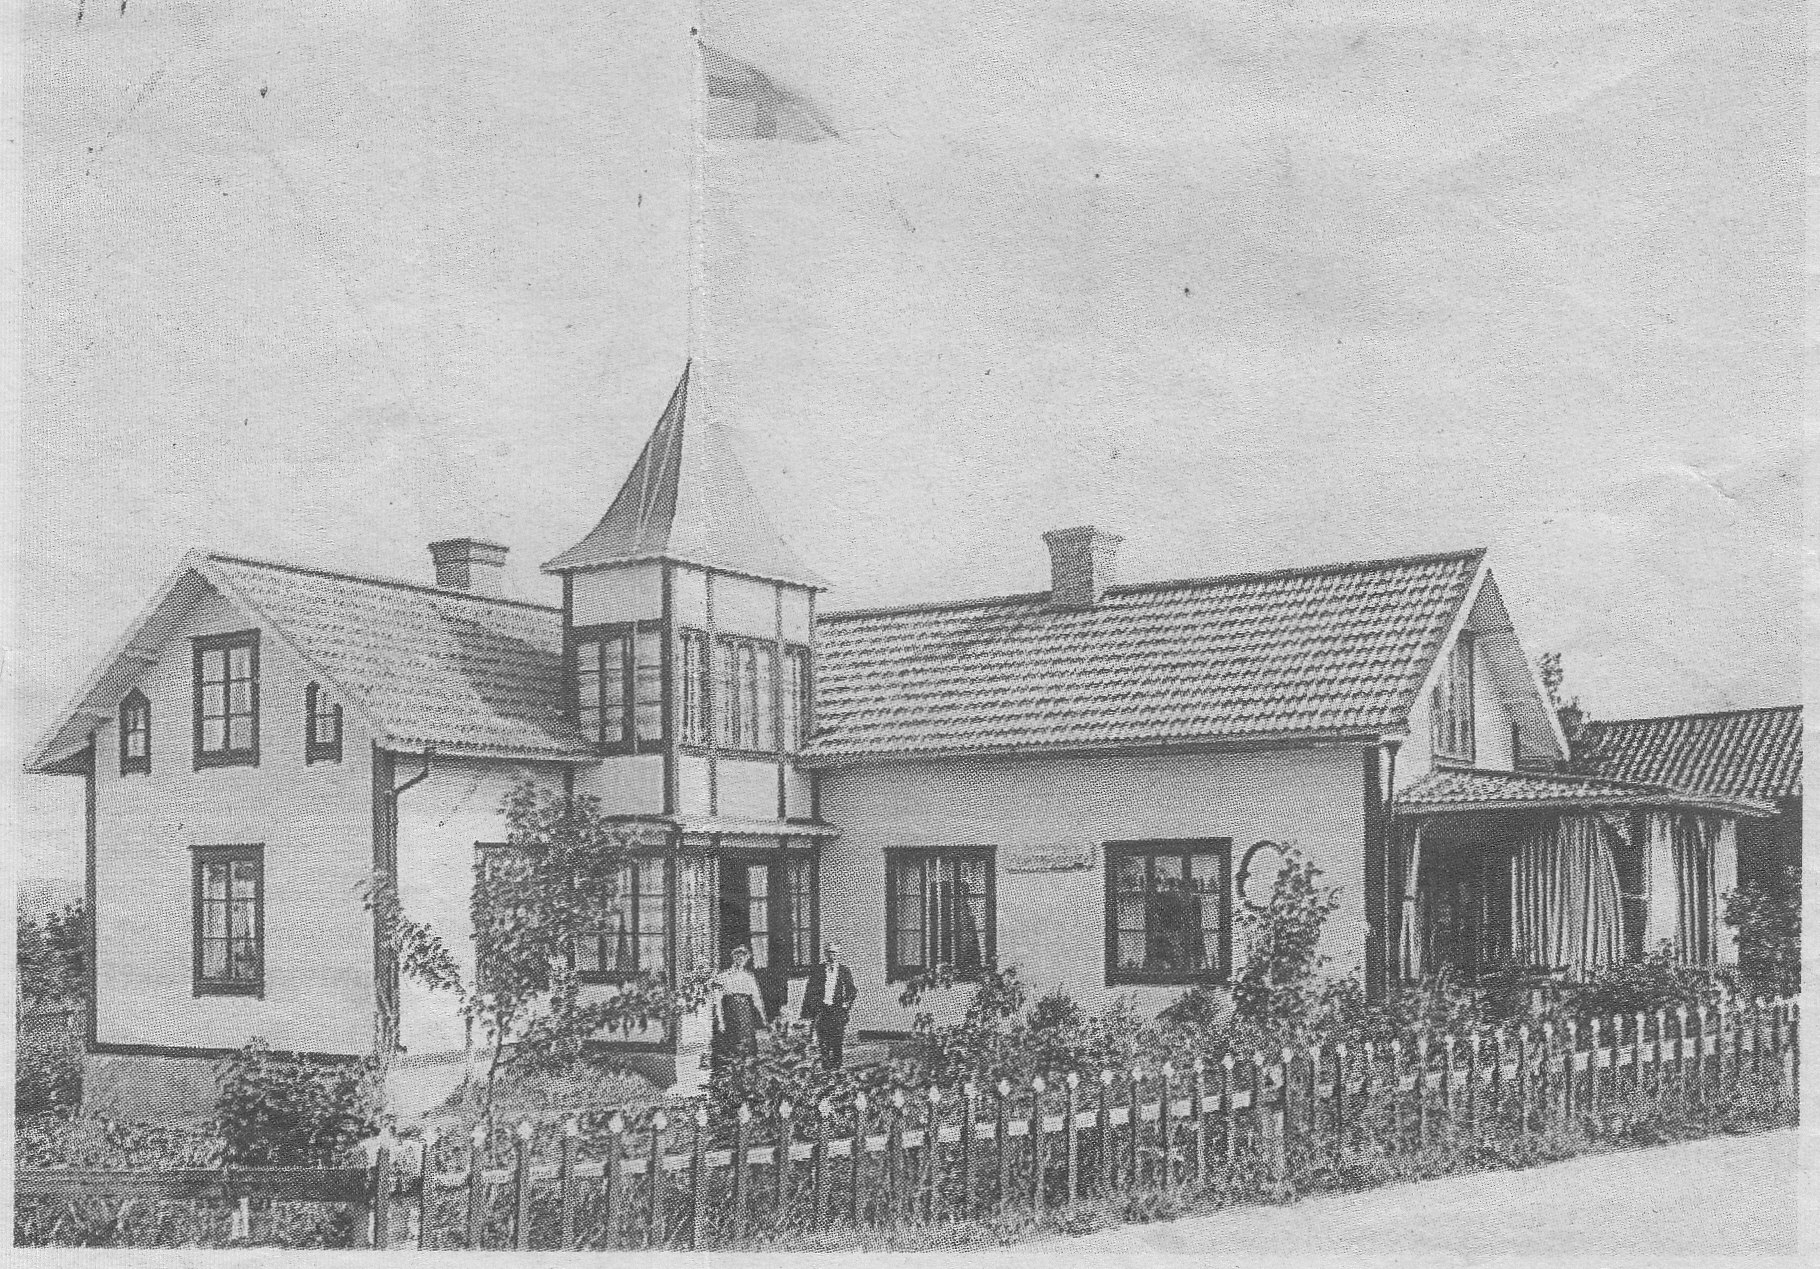  Elmsta omkring 1912. Charlotta och Frans Gottfrid Wicklander drev kaféet. Bild ur Norrtälje tidning.